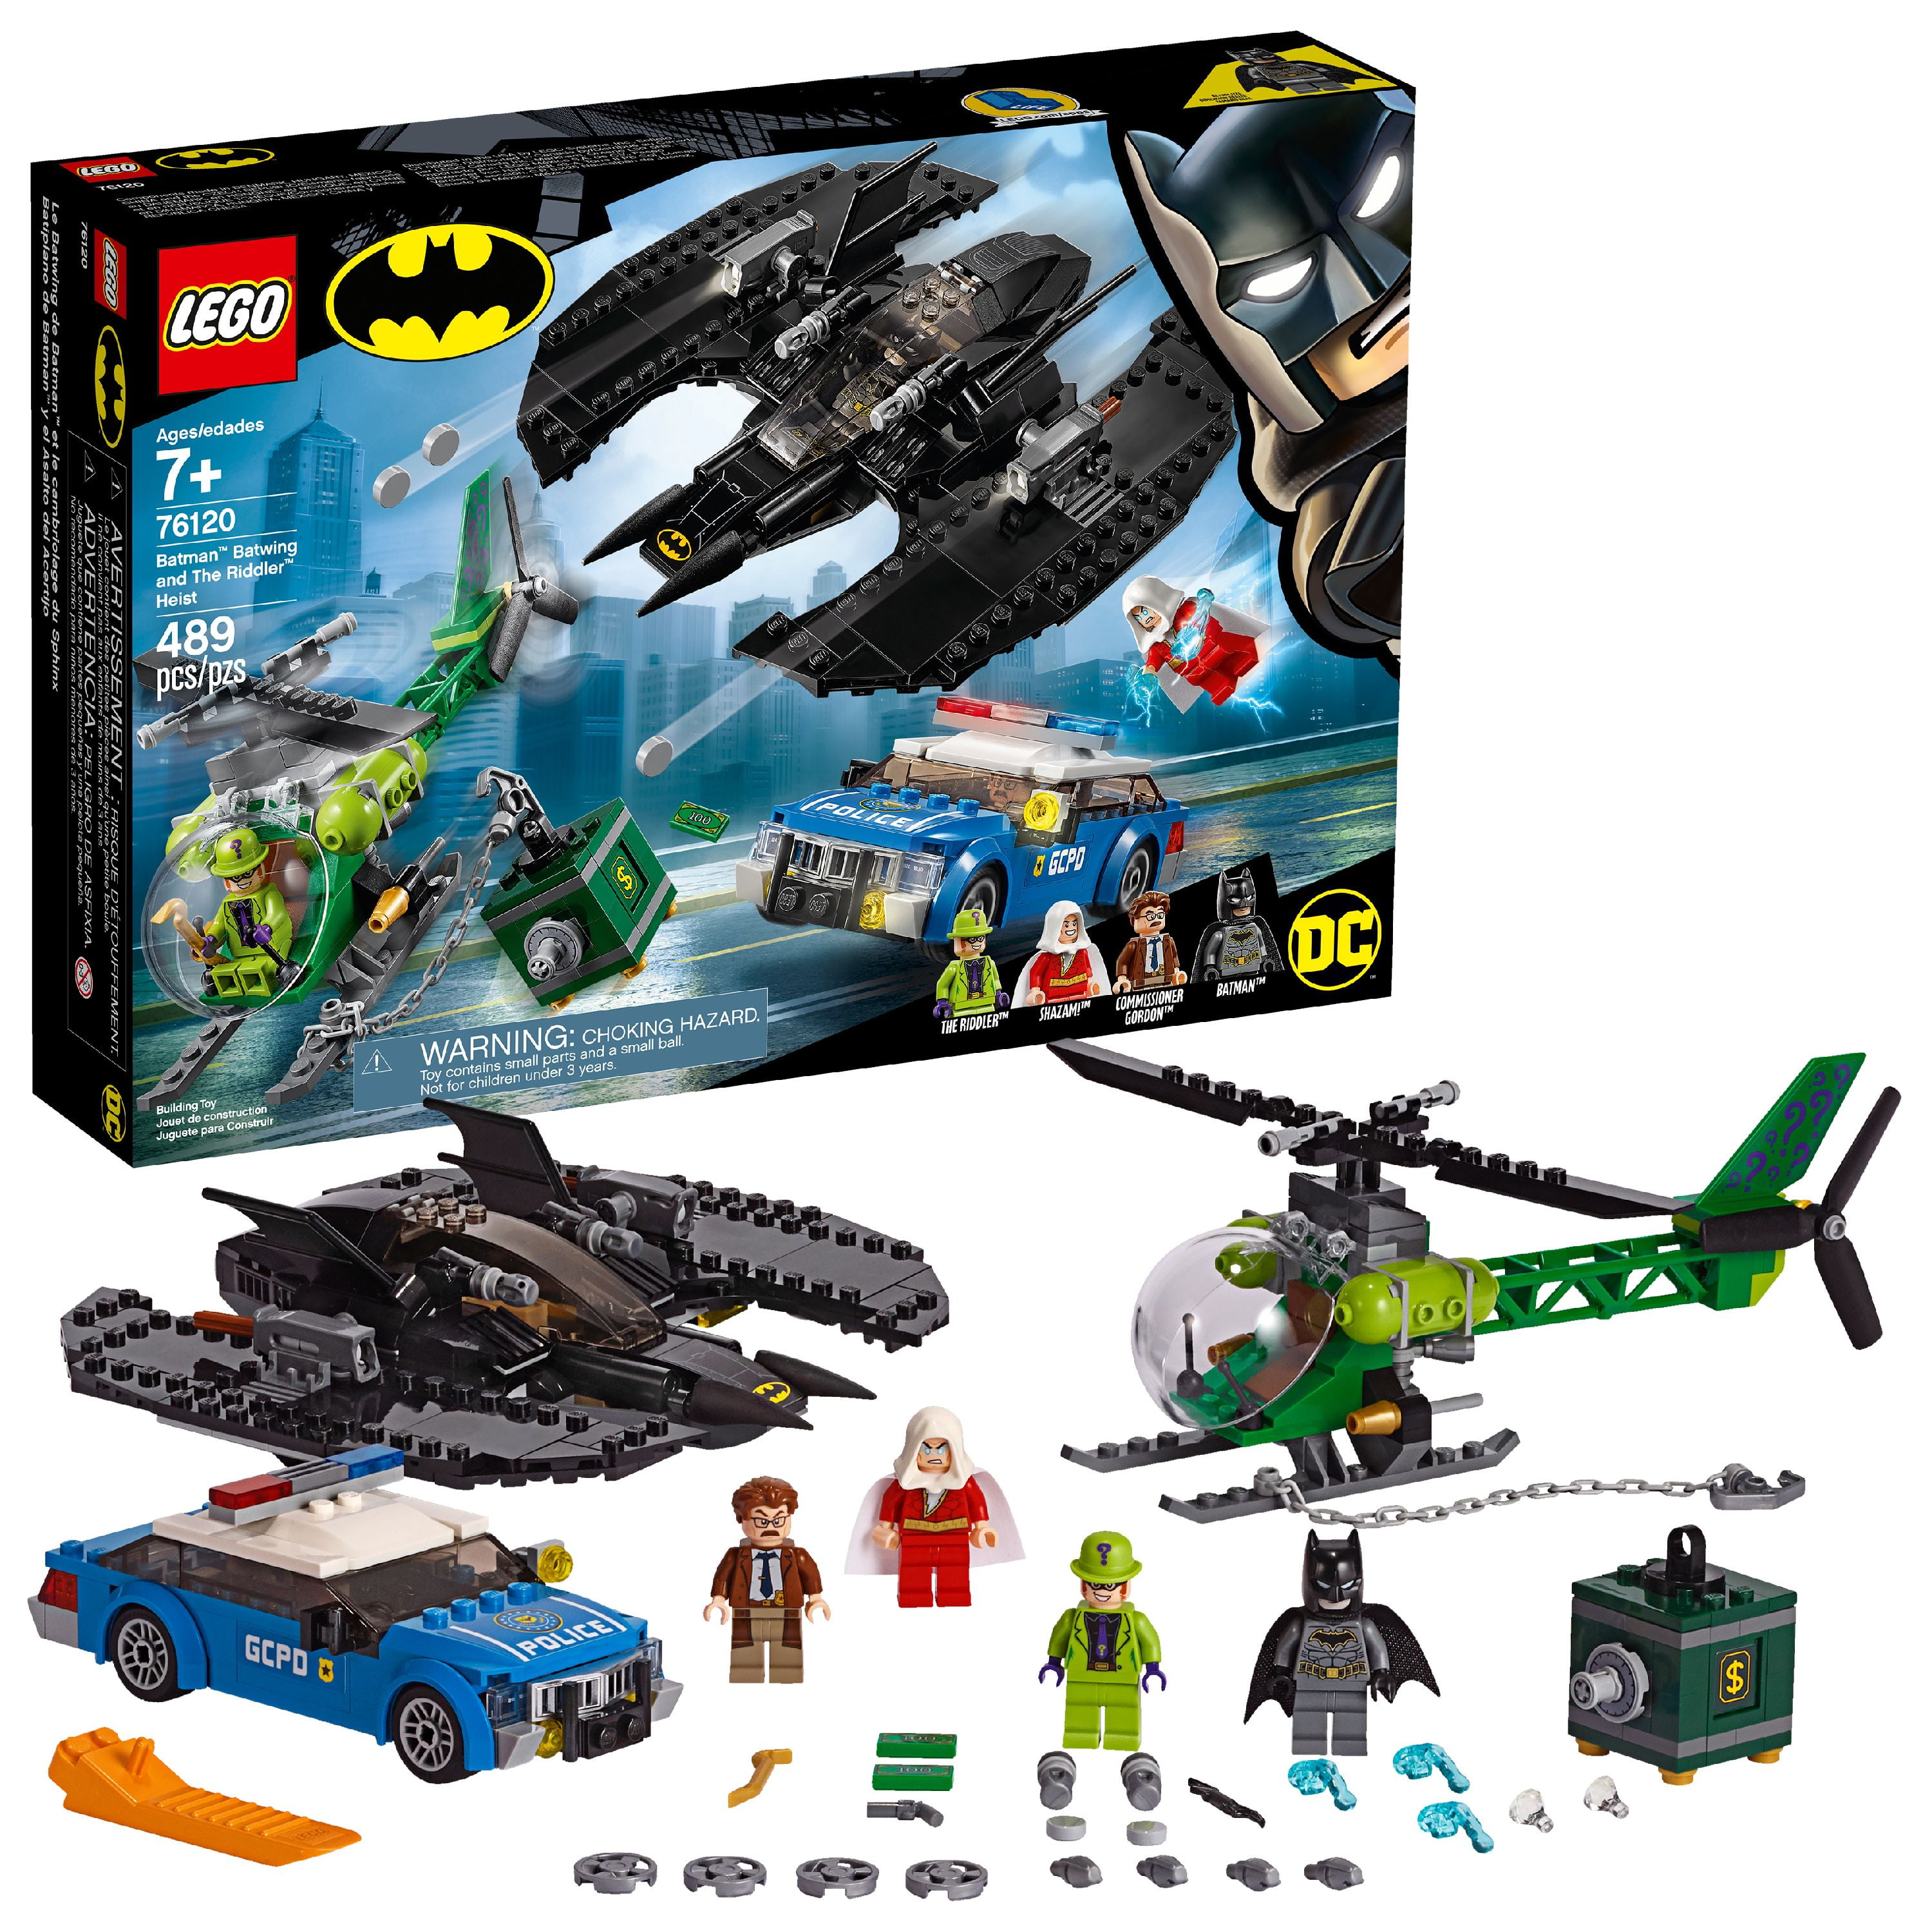 BATMAN 10737 76137 DC COMICS BATMAN LEGO SUPERHEROES MINIFIGURE SH513 